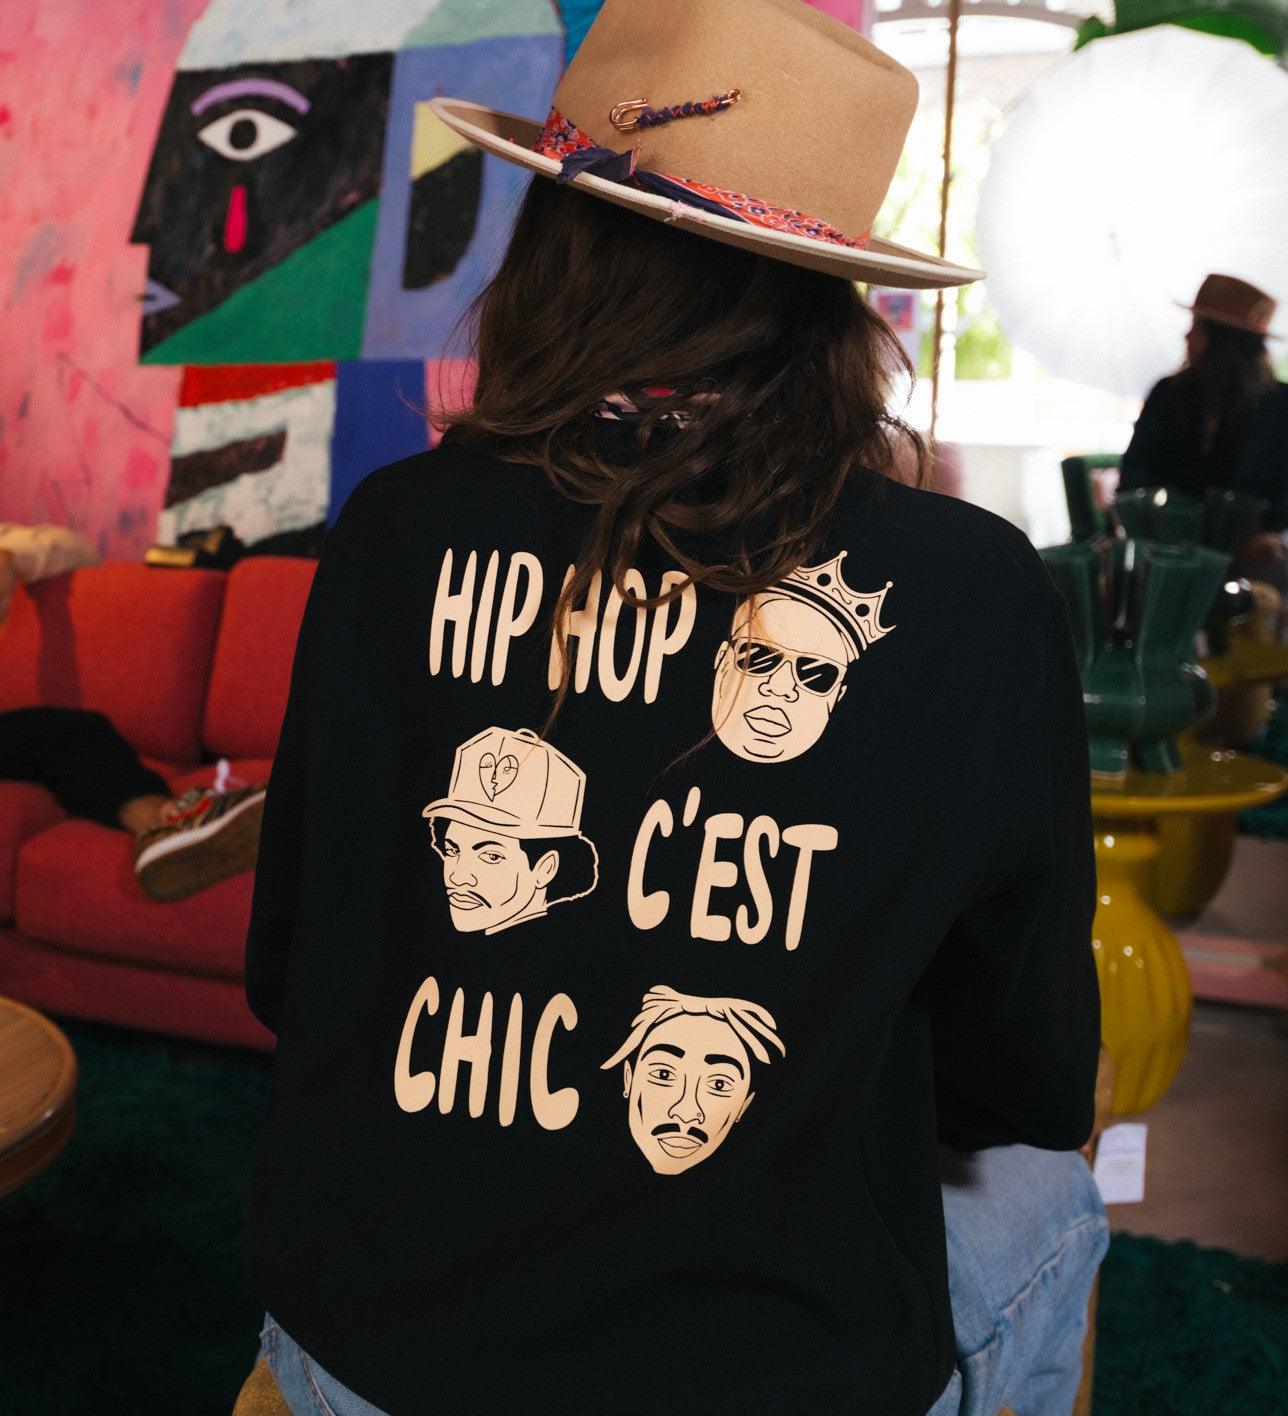 Hip Hop C'est Chic Pullover schwarz